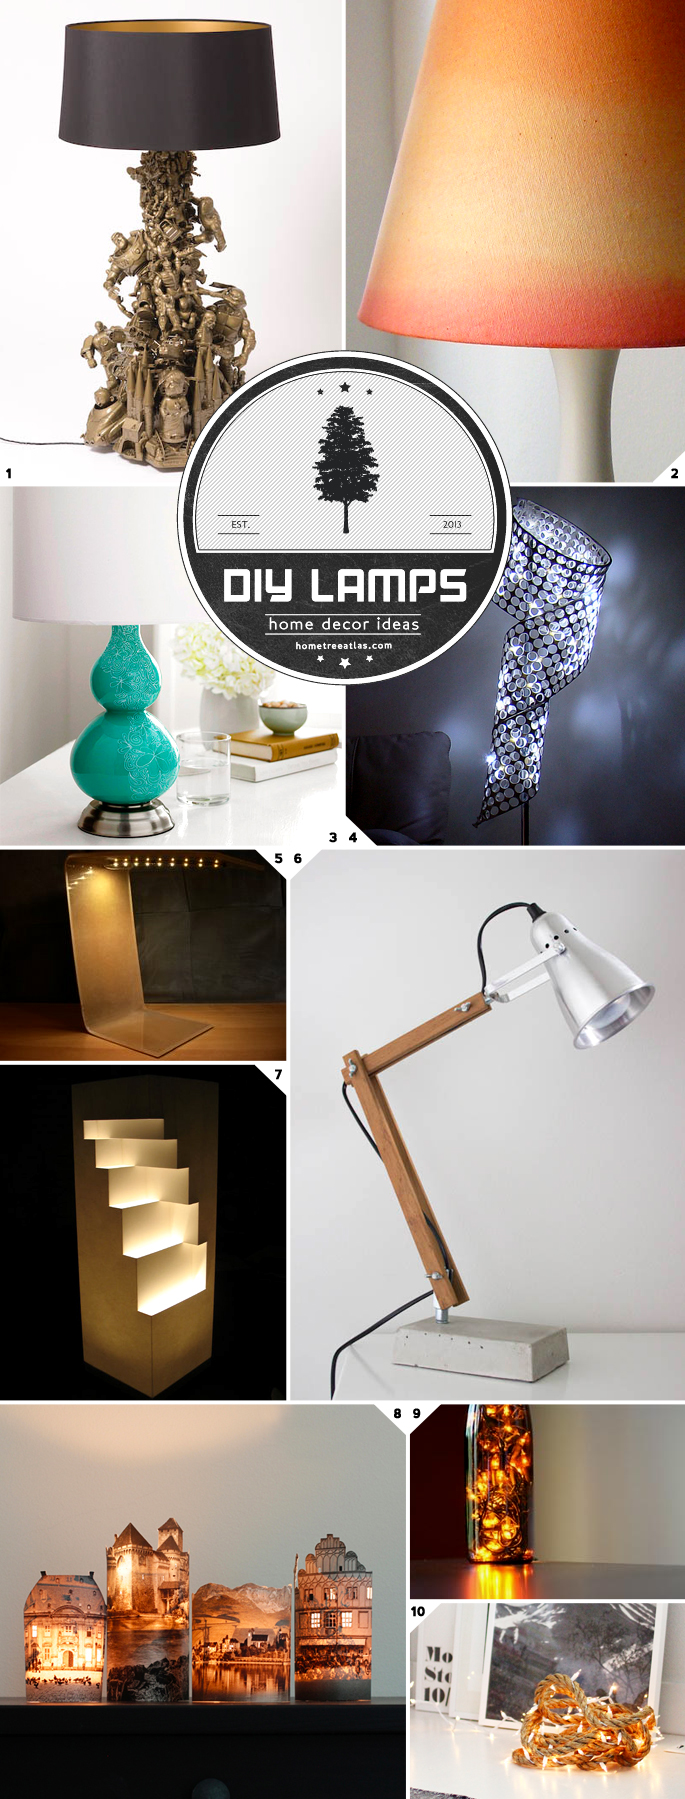 DIY Lamp Ideas